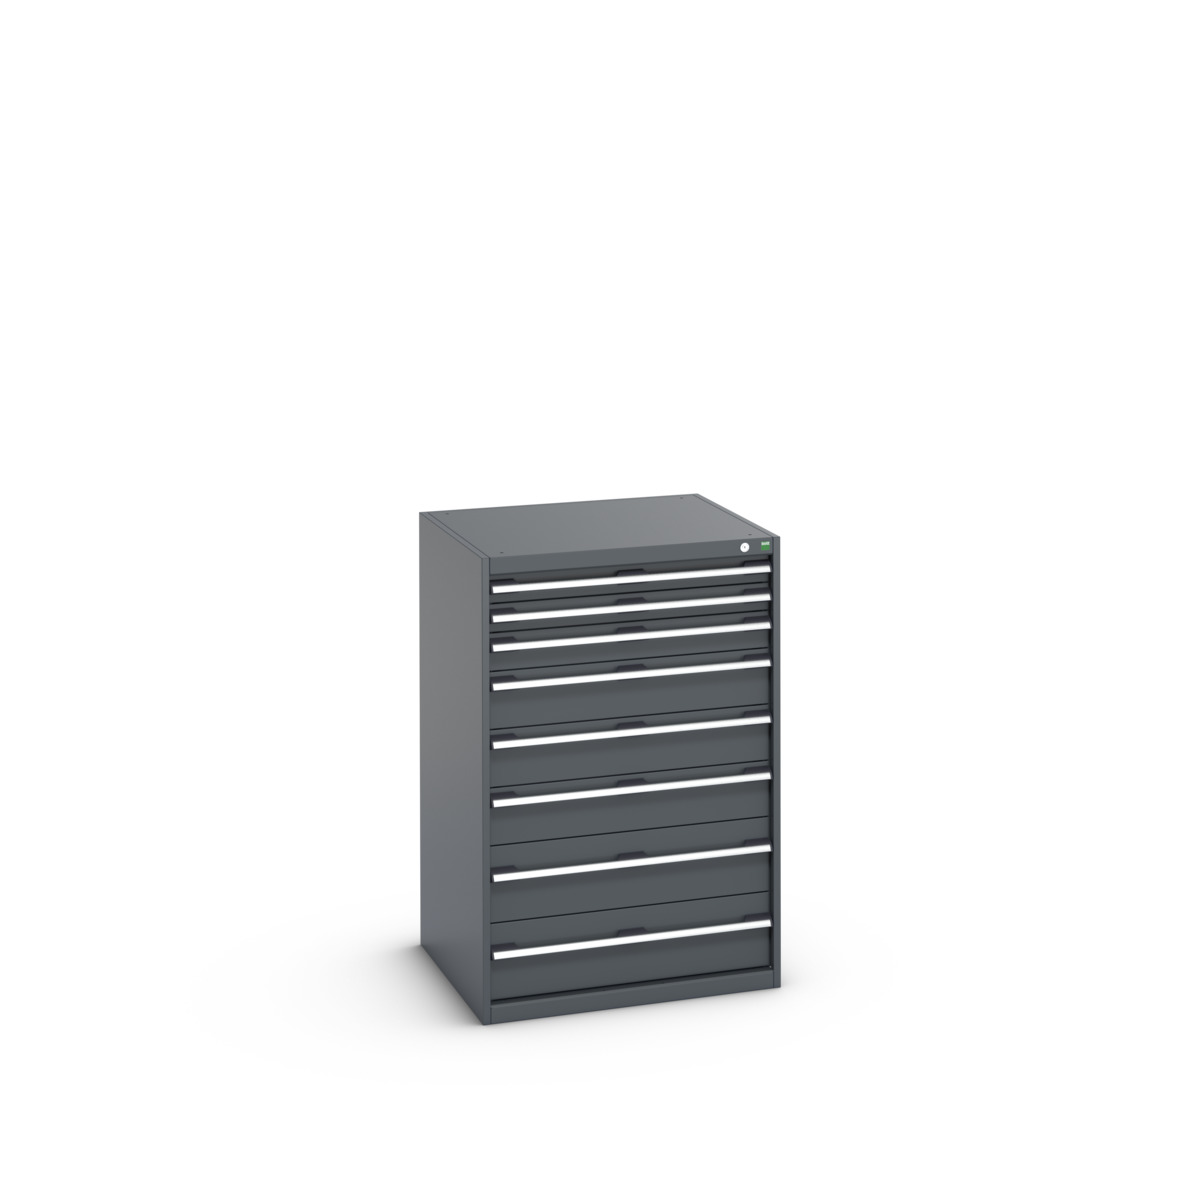 40028033.77V - cubio drawer cabinet